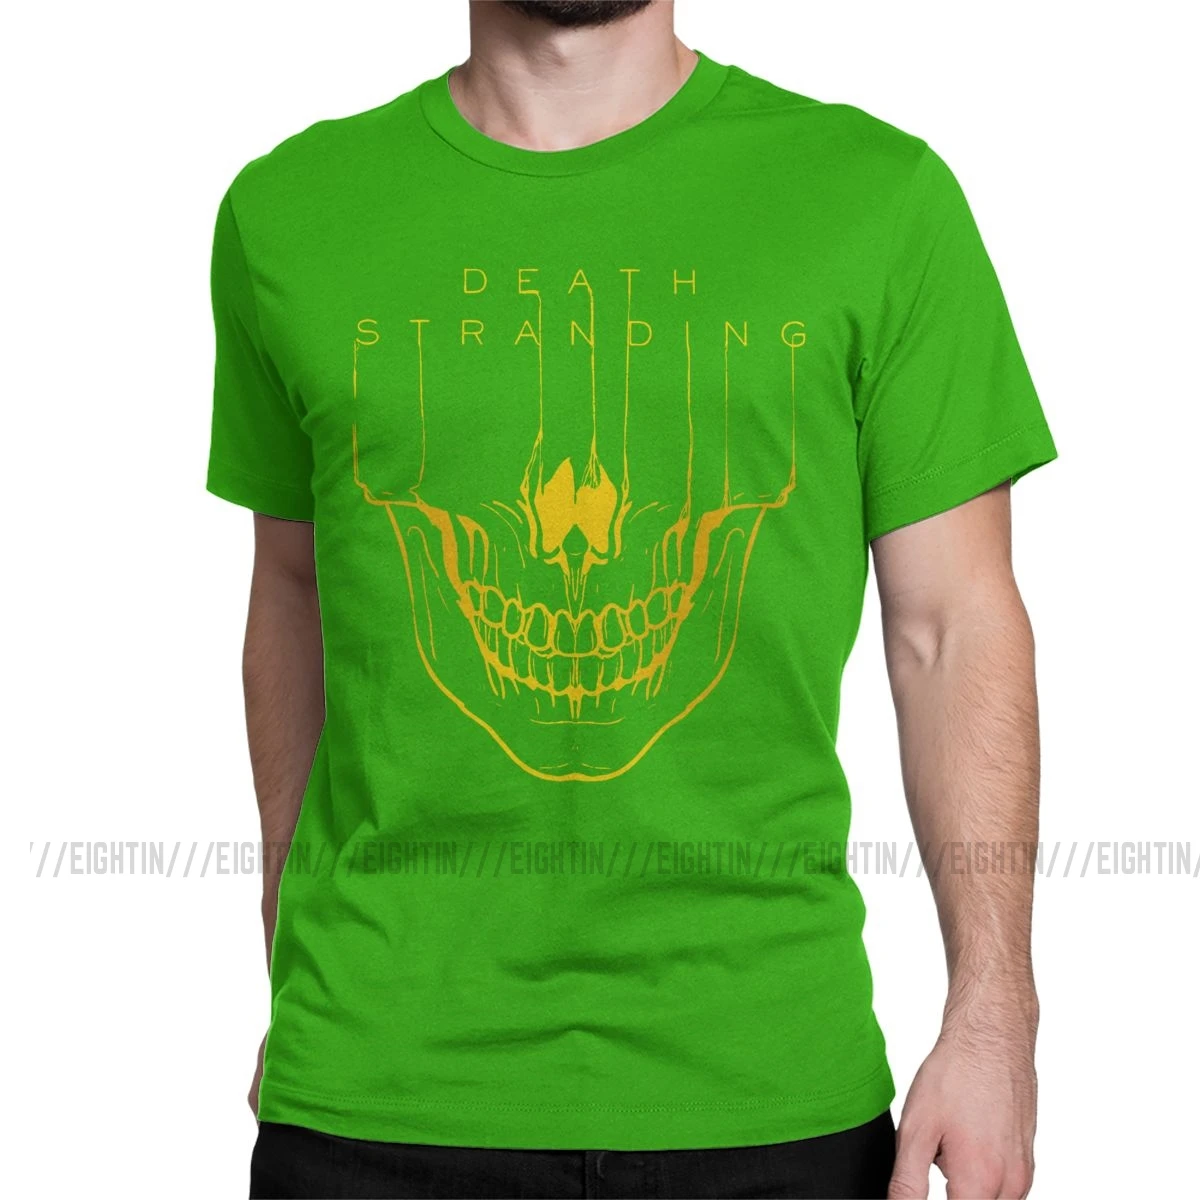 Мужская футболка с надписью "Death Stranding", Кодзима Хидео, металлическая шестерня, одноцветная футболка с коротким рукавом из хлопка с изображением игры "Reedus Norman Game Mgs", 4XL, 5XL, футболка - Цвет: Зеленый